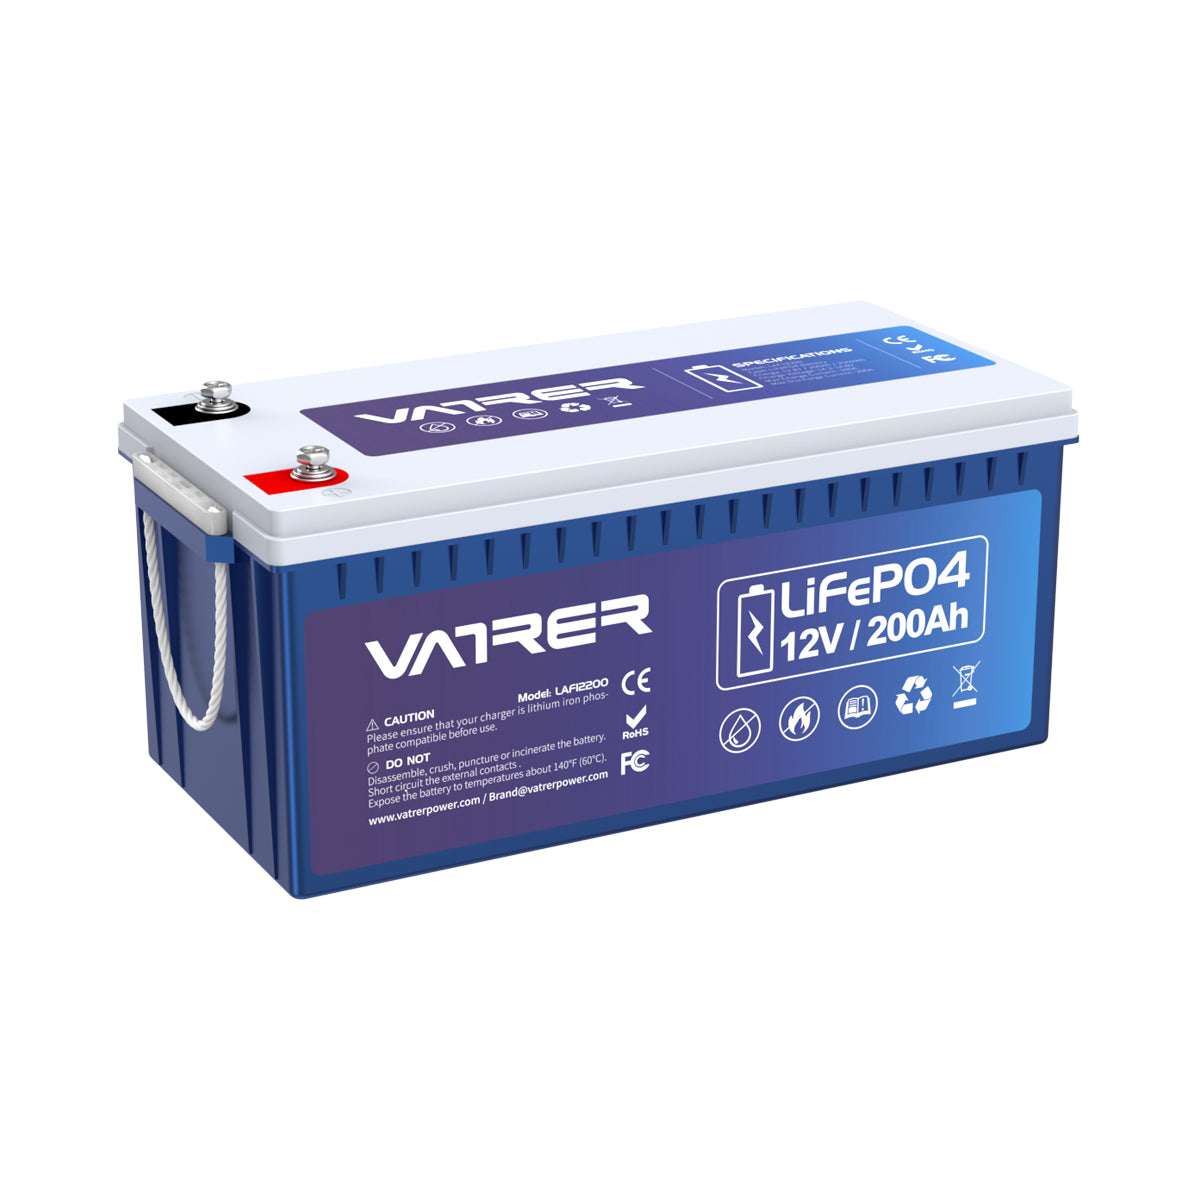 <tc>Vatrer</tc> 12 V 200 Ah Plus-Lithiumbatterie, integriertes 200 A BMS und LiFePO4-Batterien mit Niedertemperaturabschaltung 11